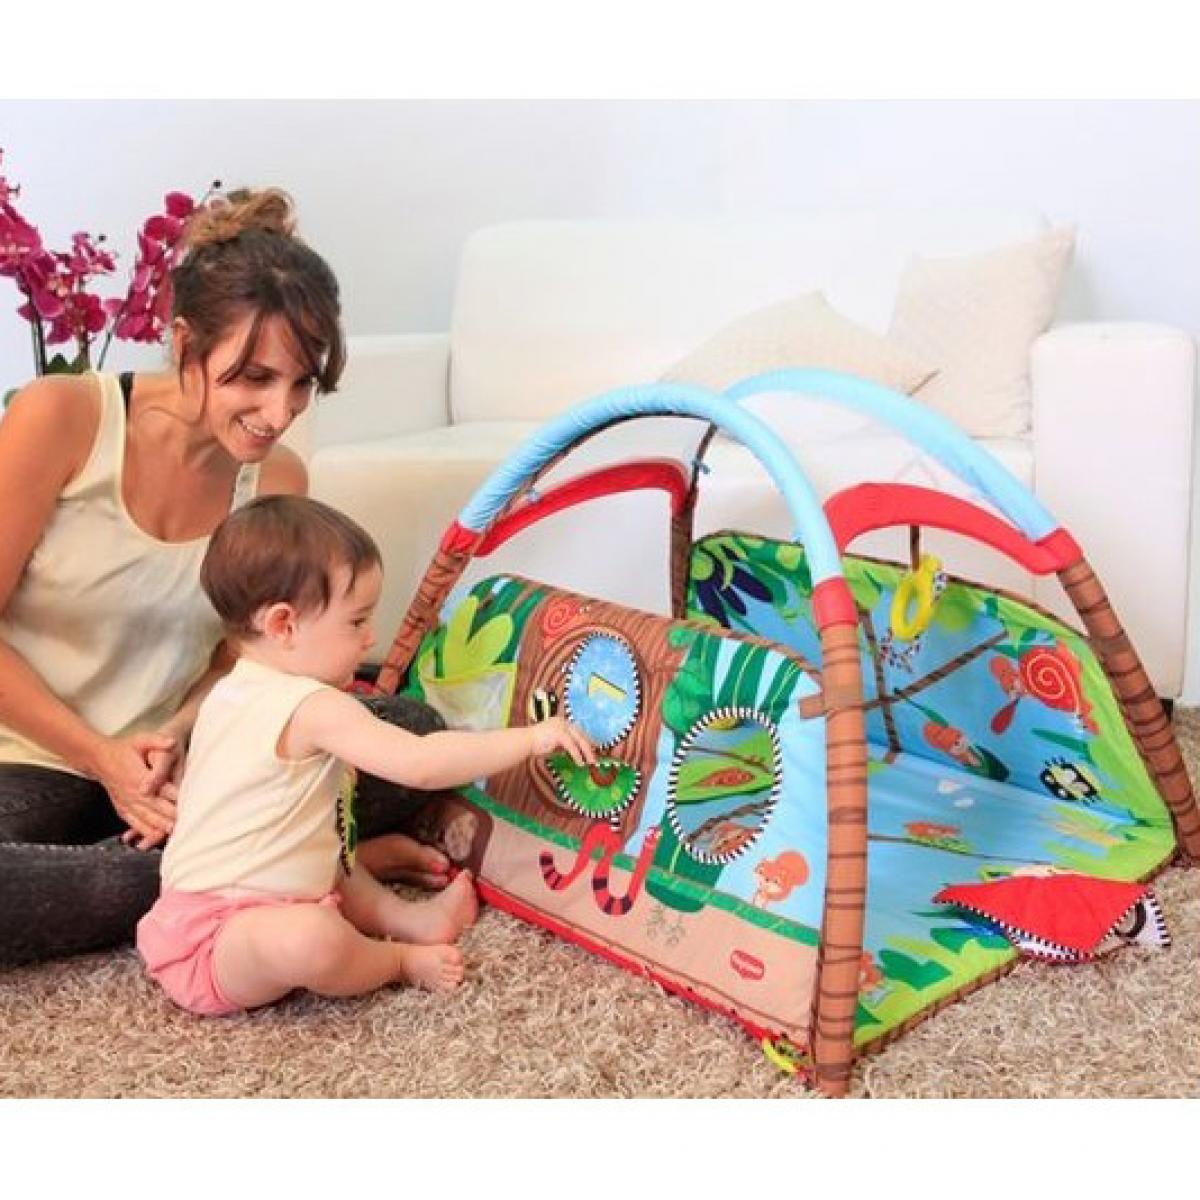 Описание Развивающий детский коврик Домик с набором игрушек (74*40*58 см) от Meying